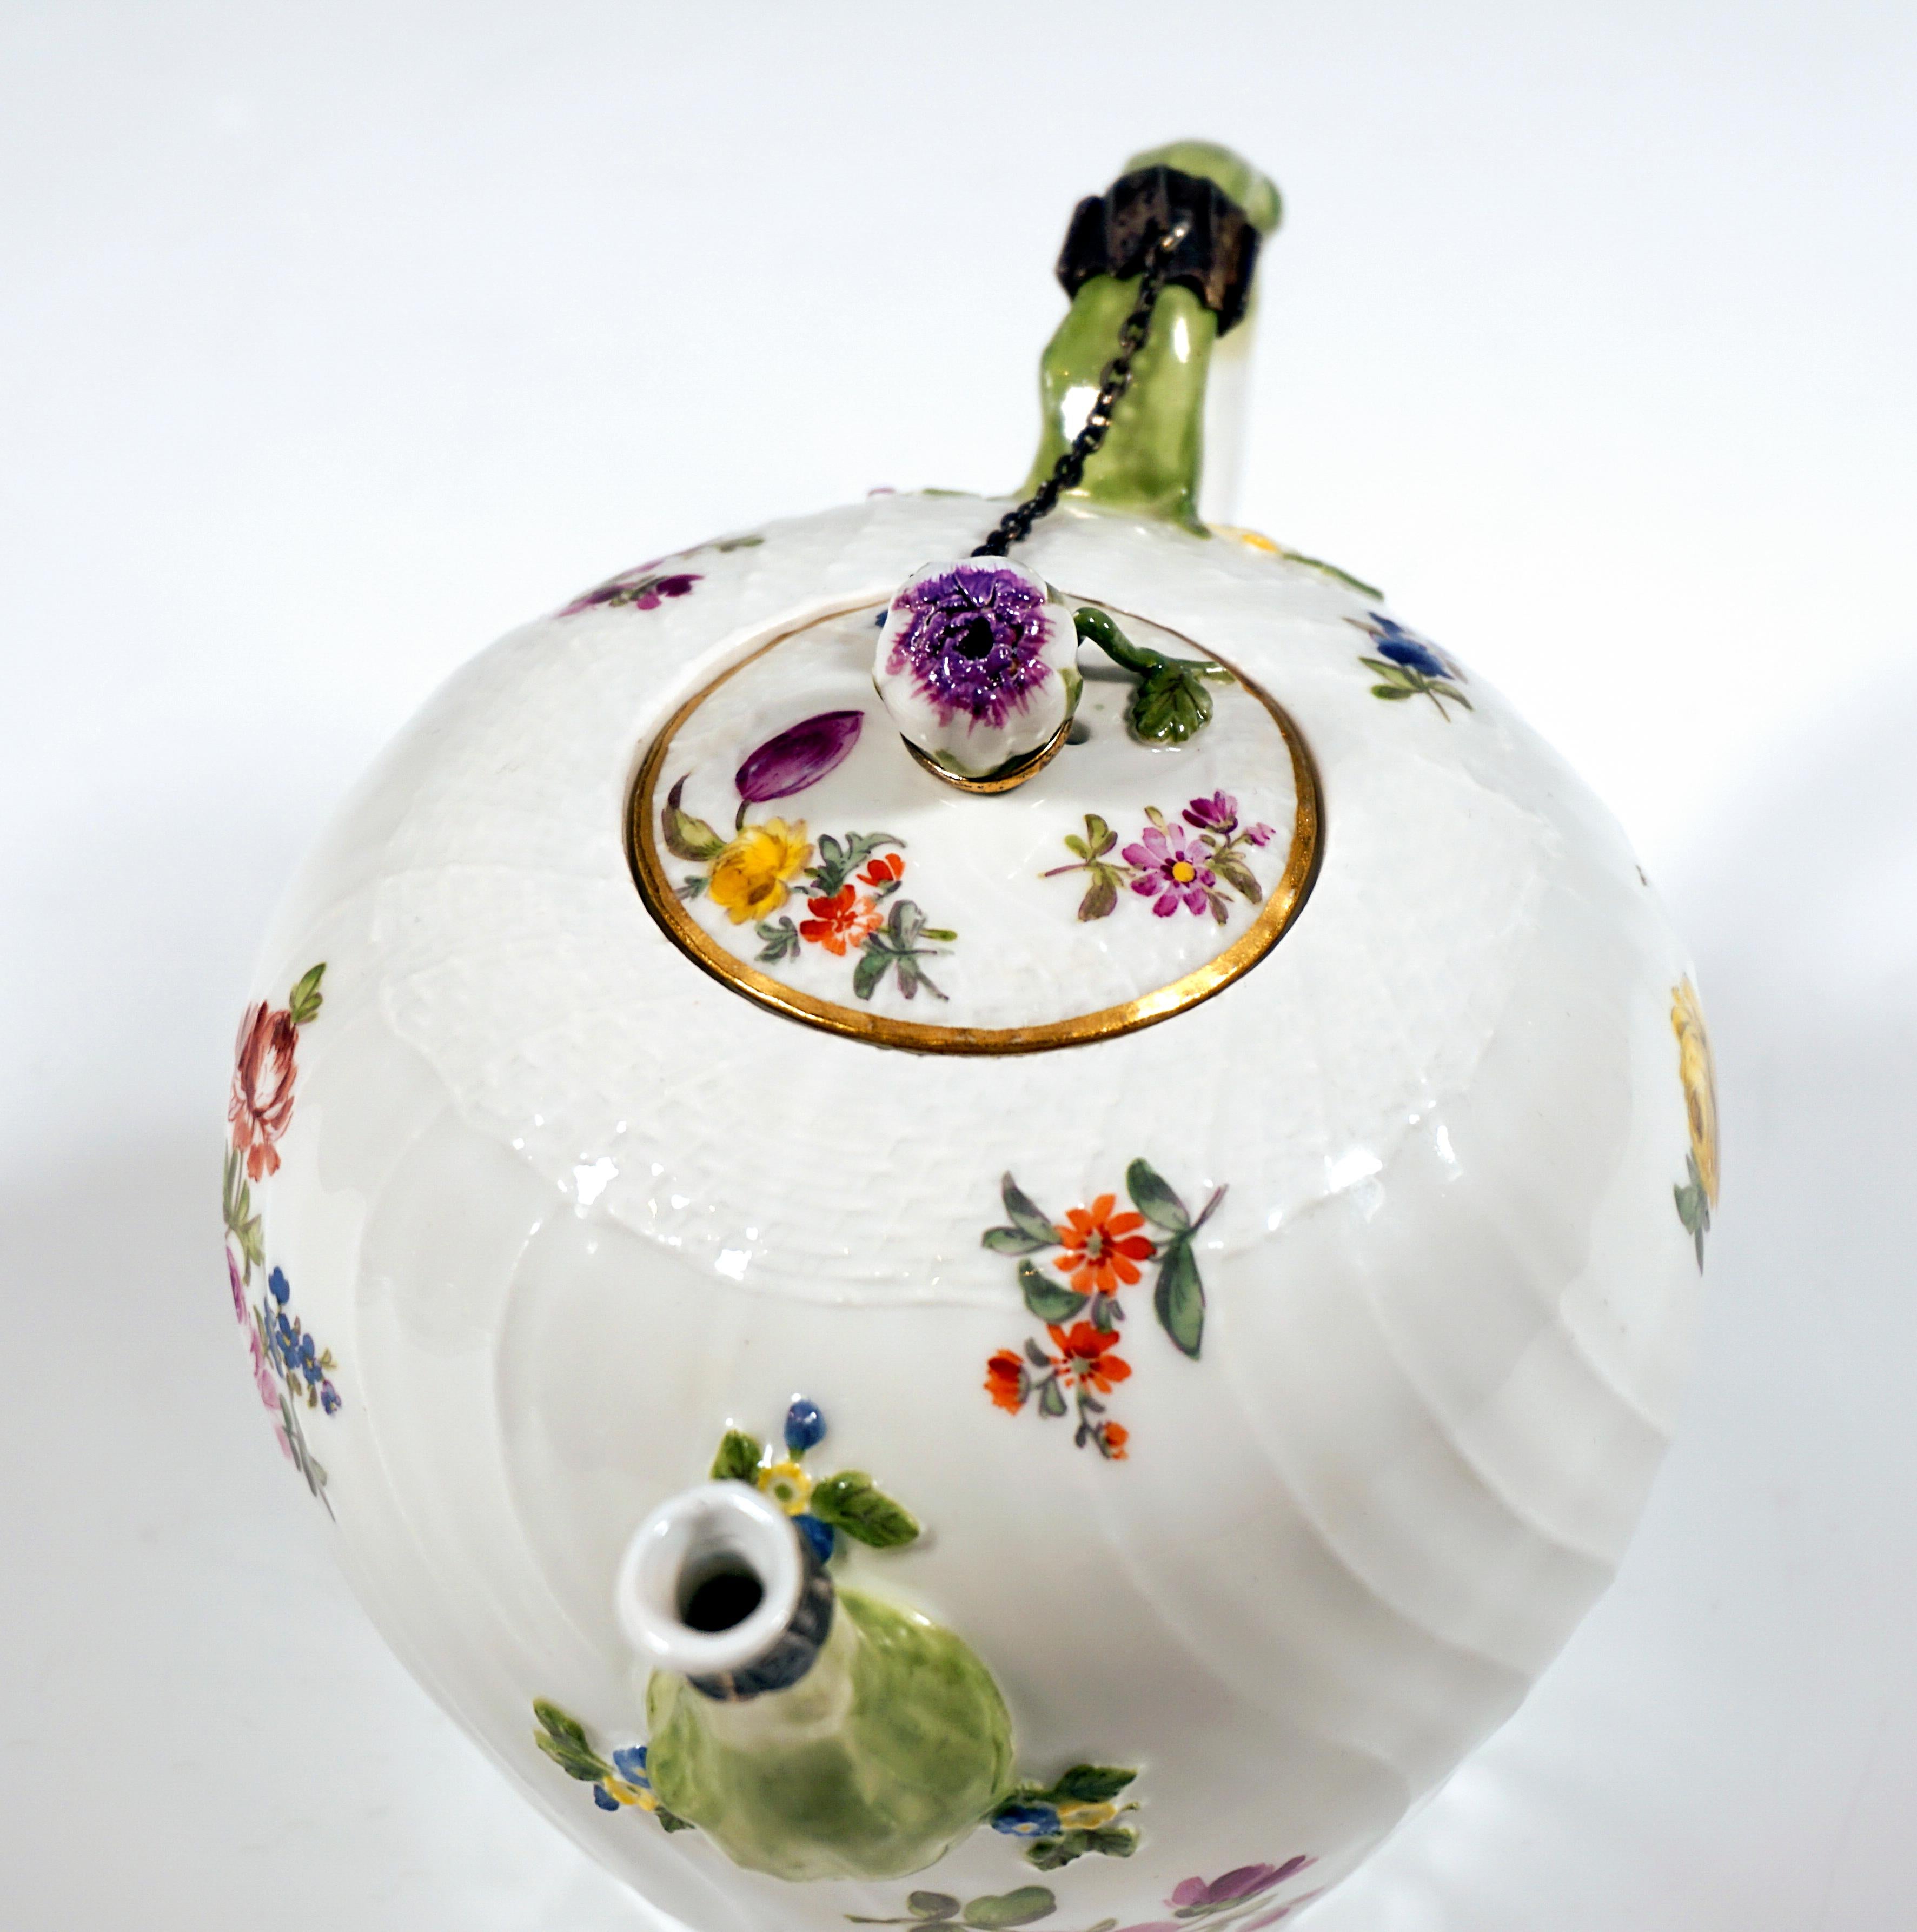 Meissener Teekanne mit Blumendekoration und Silberhalterung, Rokoko-Periode, um 1750 (18. Jahrhundert)